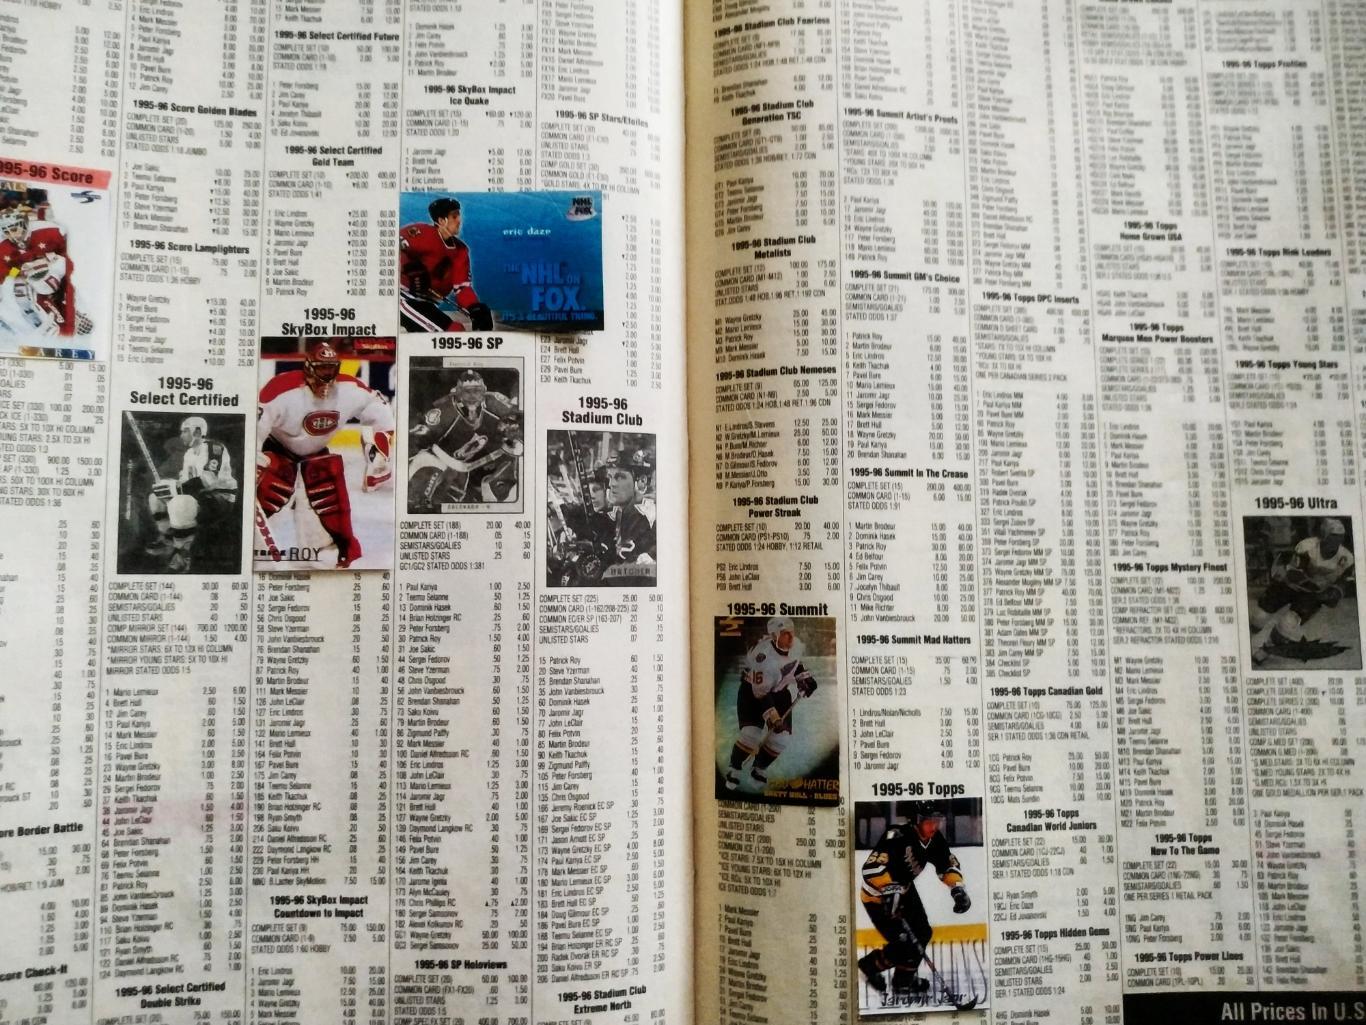 ЖУРНАЛ ЕЖЕМЕСЯЧНИК ХОККИ БЭККЕТ НХЛ NHL 1997 OCT BECKETT HOCKEY MAGAZINE #84 3